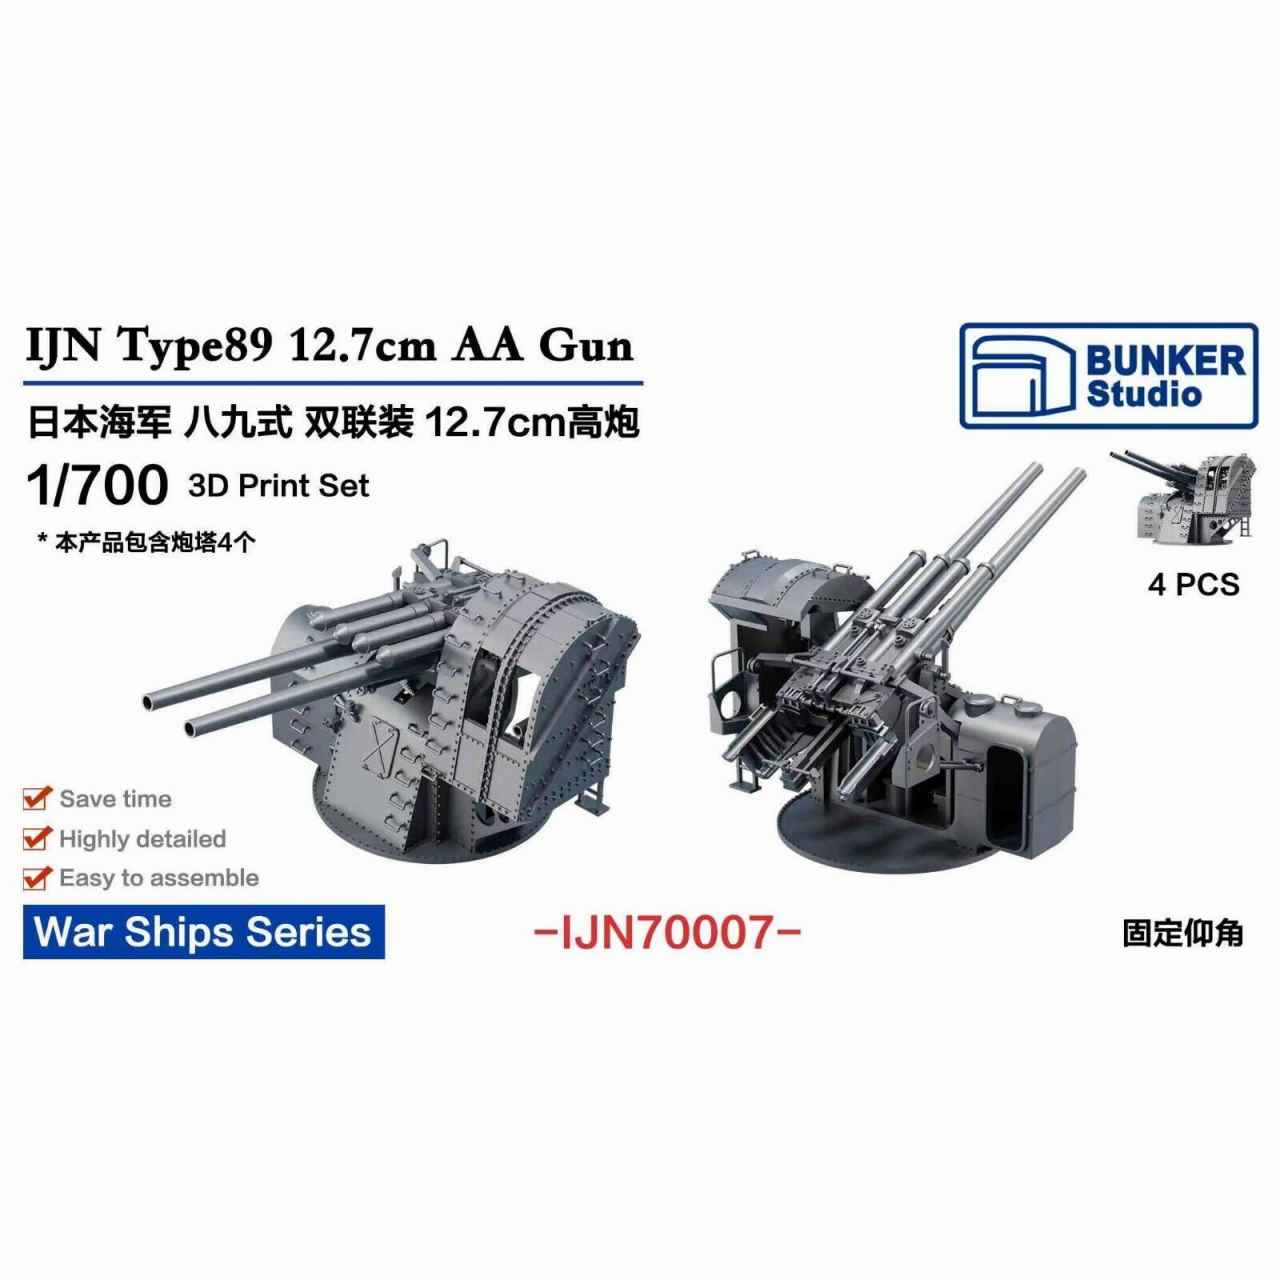 【新製品】IJN70007 日本海軍 八九式12.7cm連装高角砲